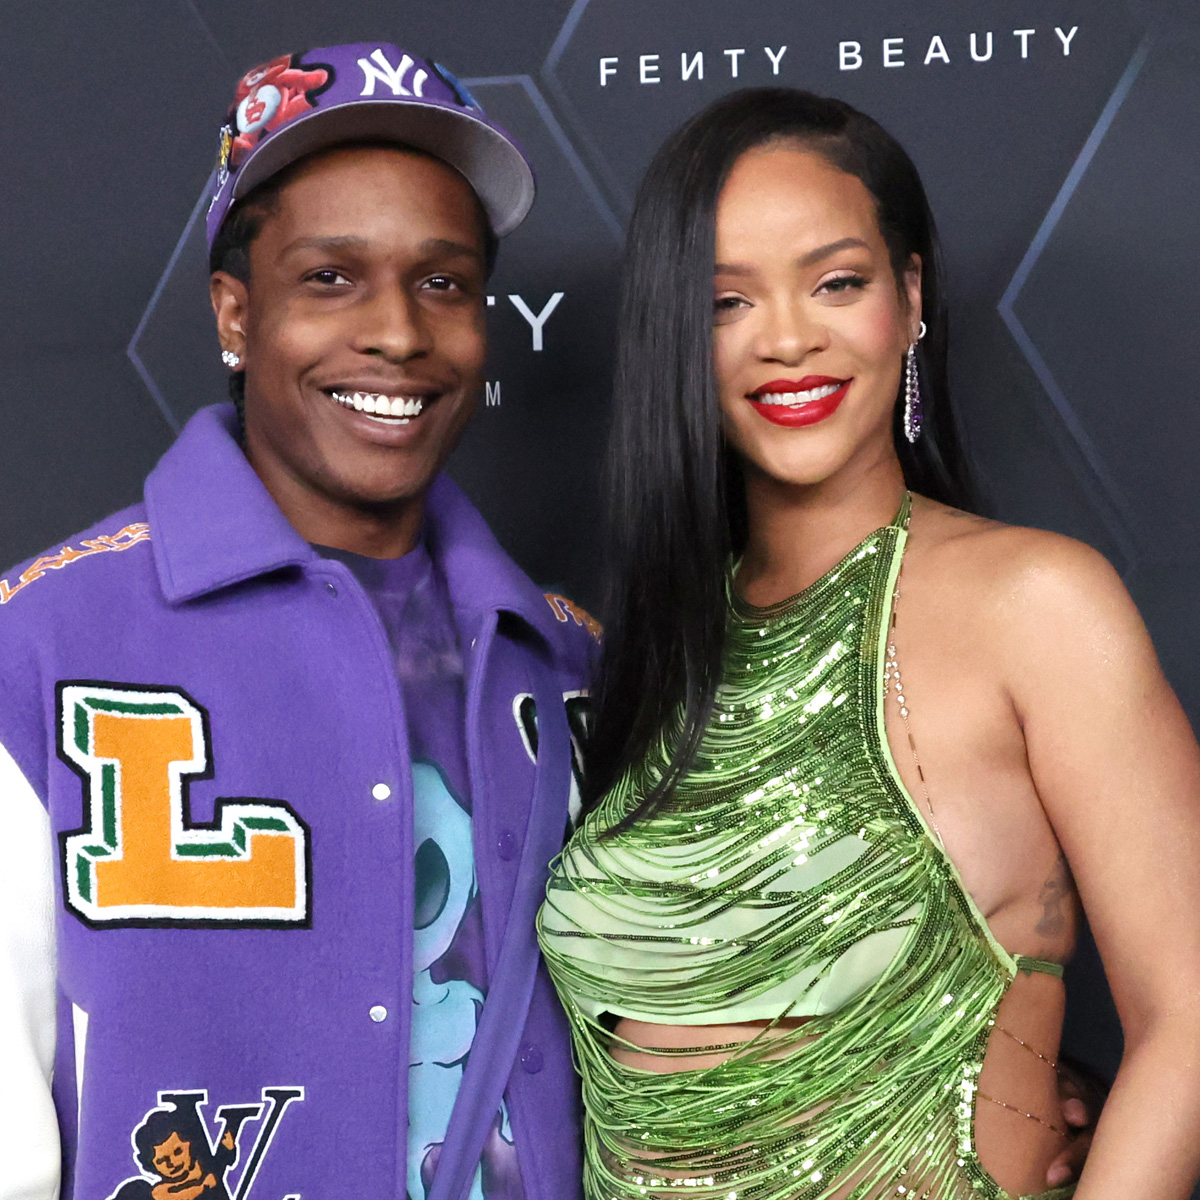 Riana Xxx - A$AP Rocky Shares Adorable New Photos of His & Rihanna's Baby Boy RZA - E!  Online